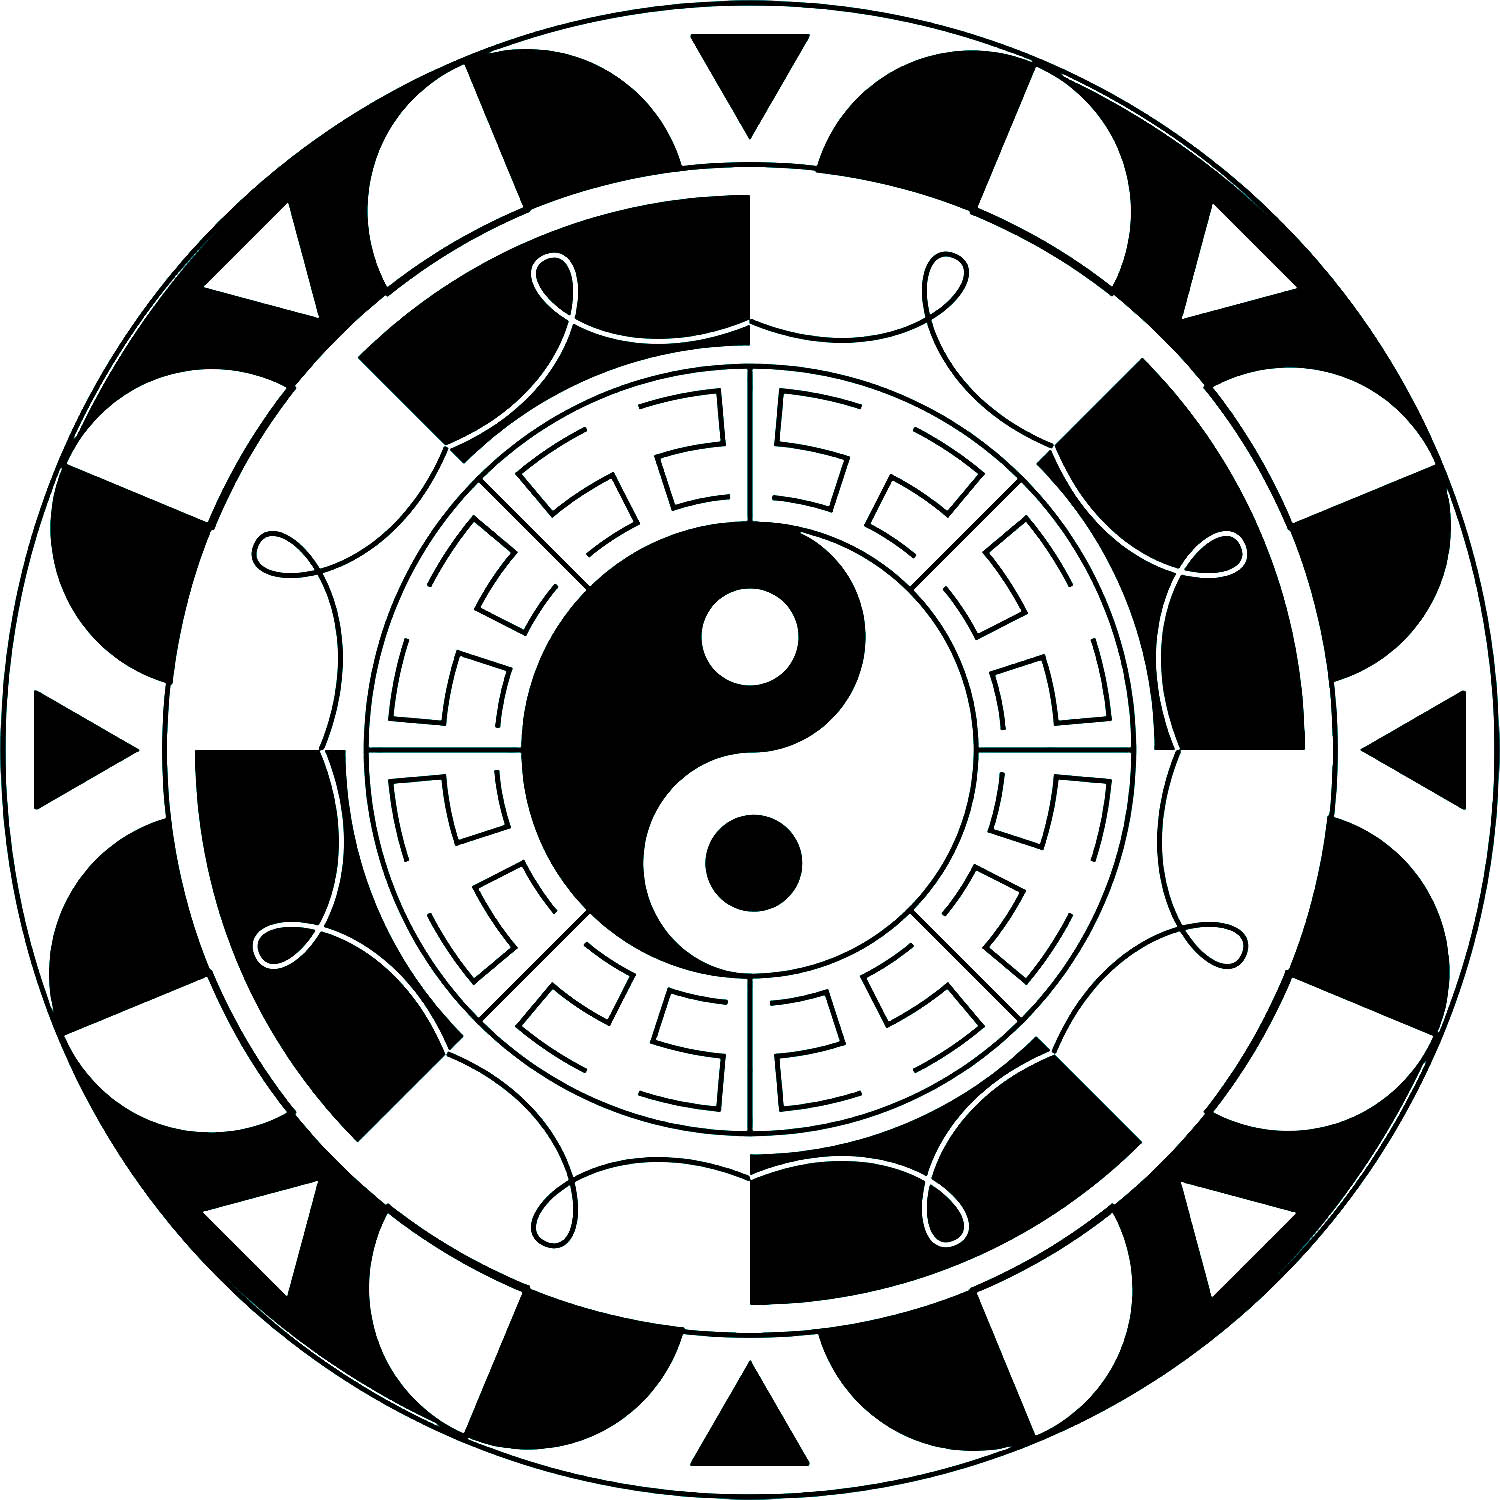 Yin und Yang ist ein altes chinesisches Symbol, das für die duale Natur der Dinge wie Licht und Dunkelheit, Gut und Böse, Positiv und Negativ steht.